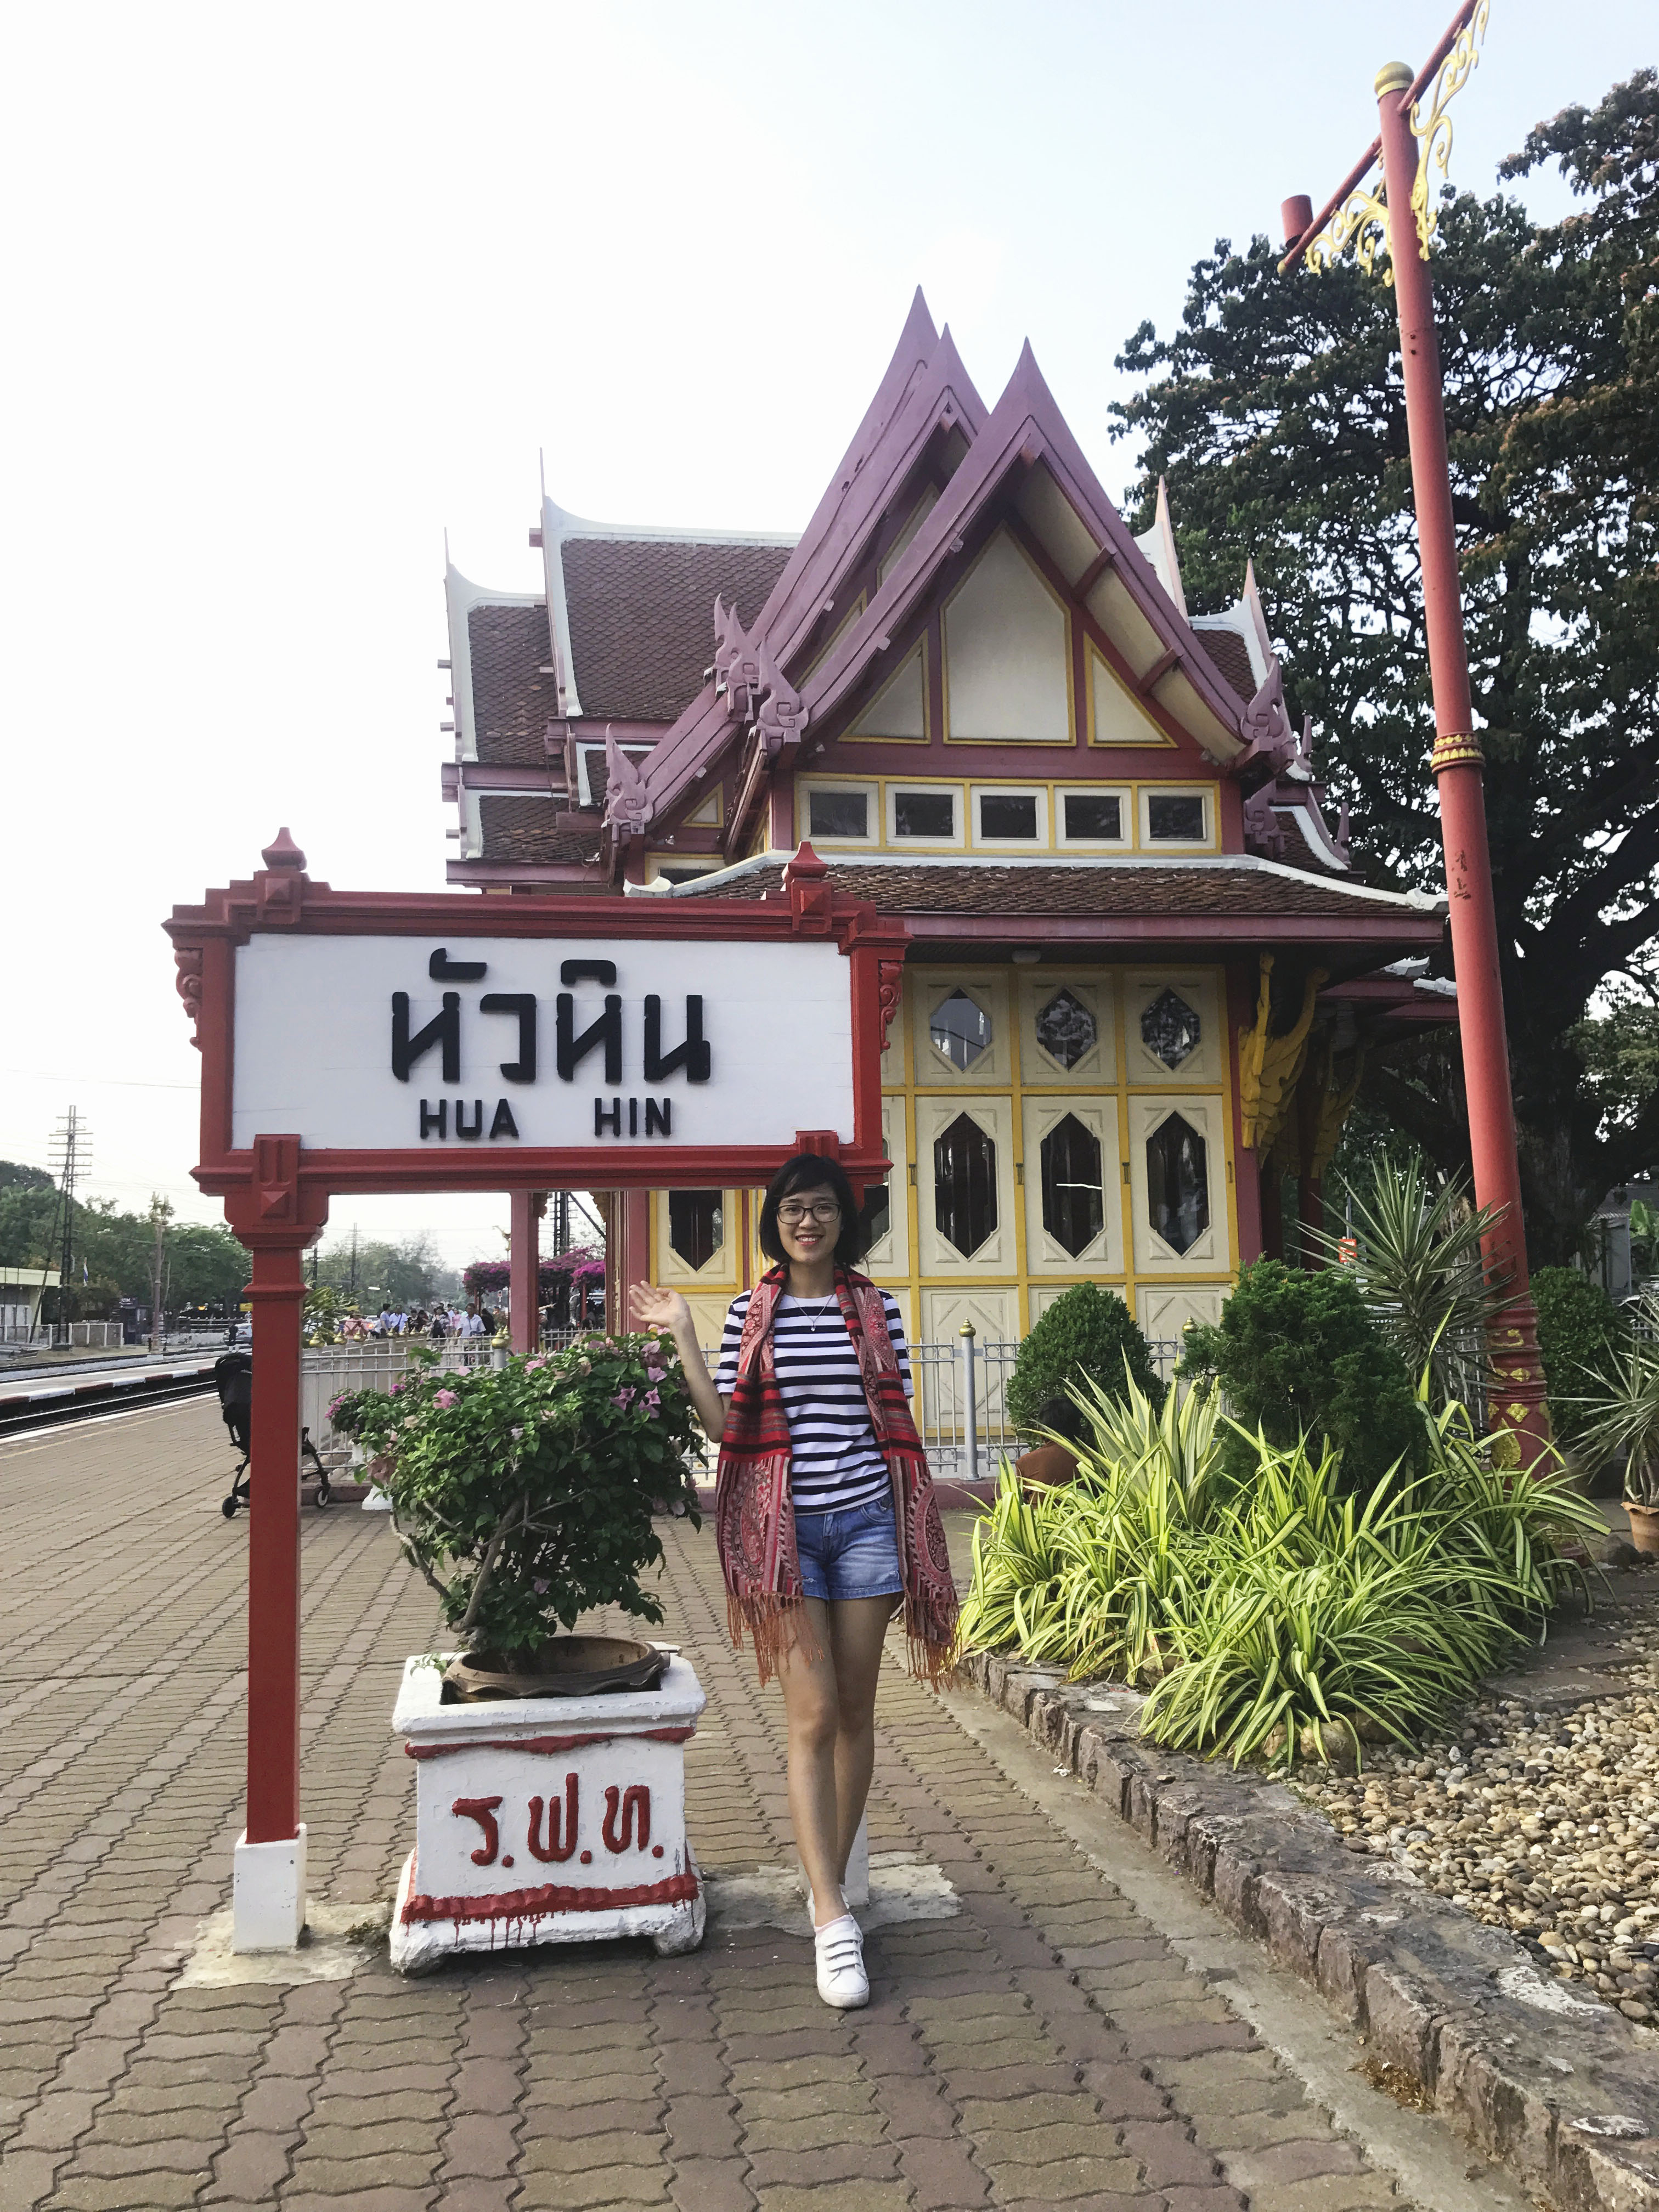 Gợi ý điểm du lịch sát sạt Bangkok, bình yên mà vẫn thỏa thích sống ảo - 8